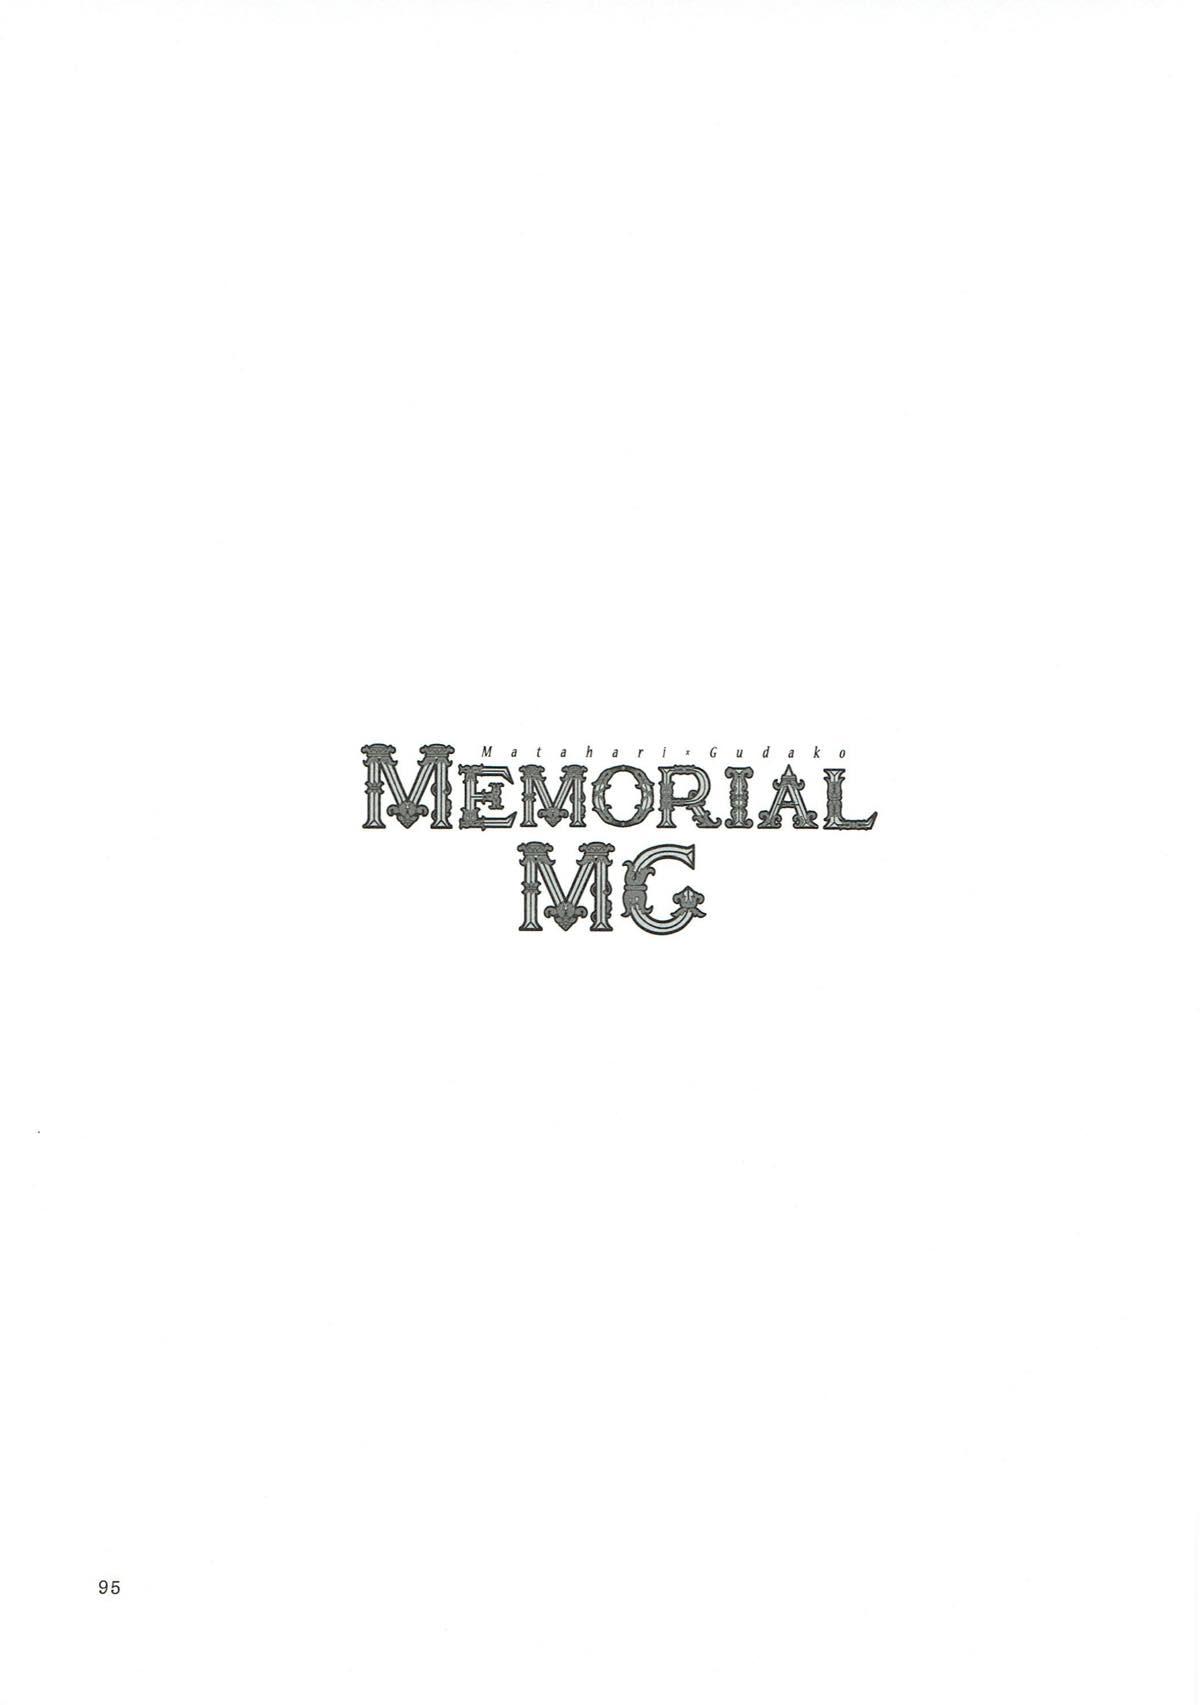 MEMORIAL MG 93